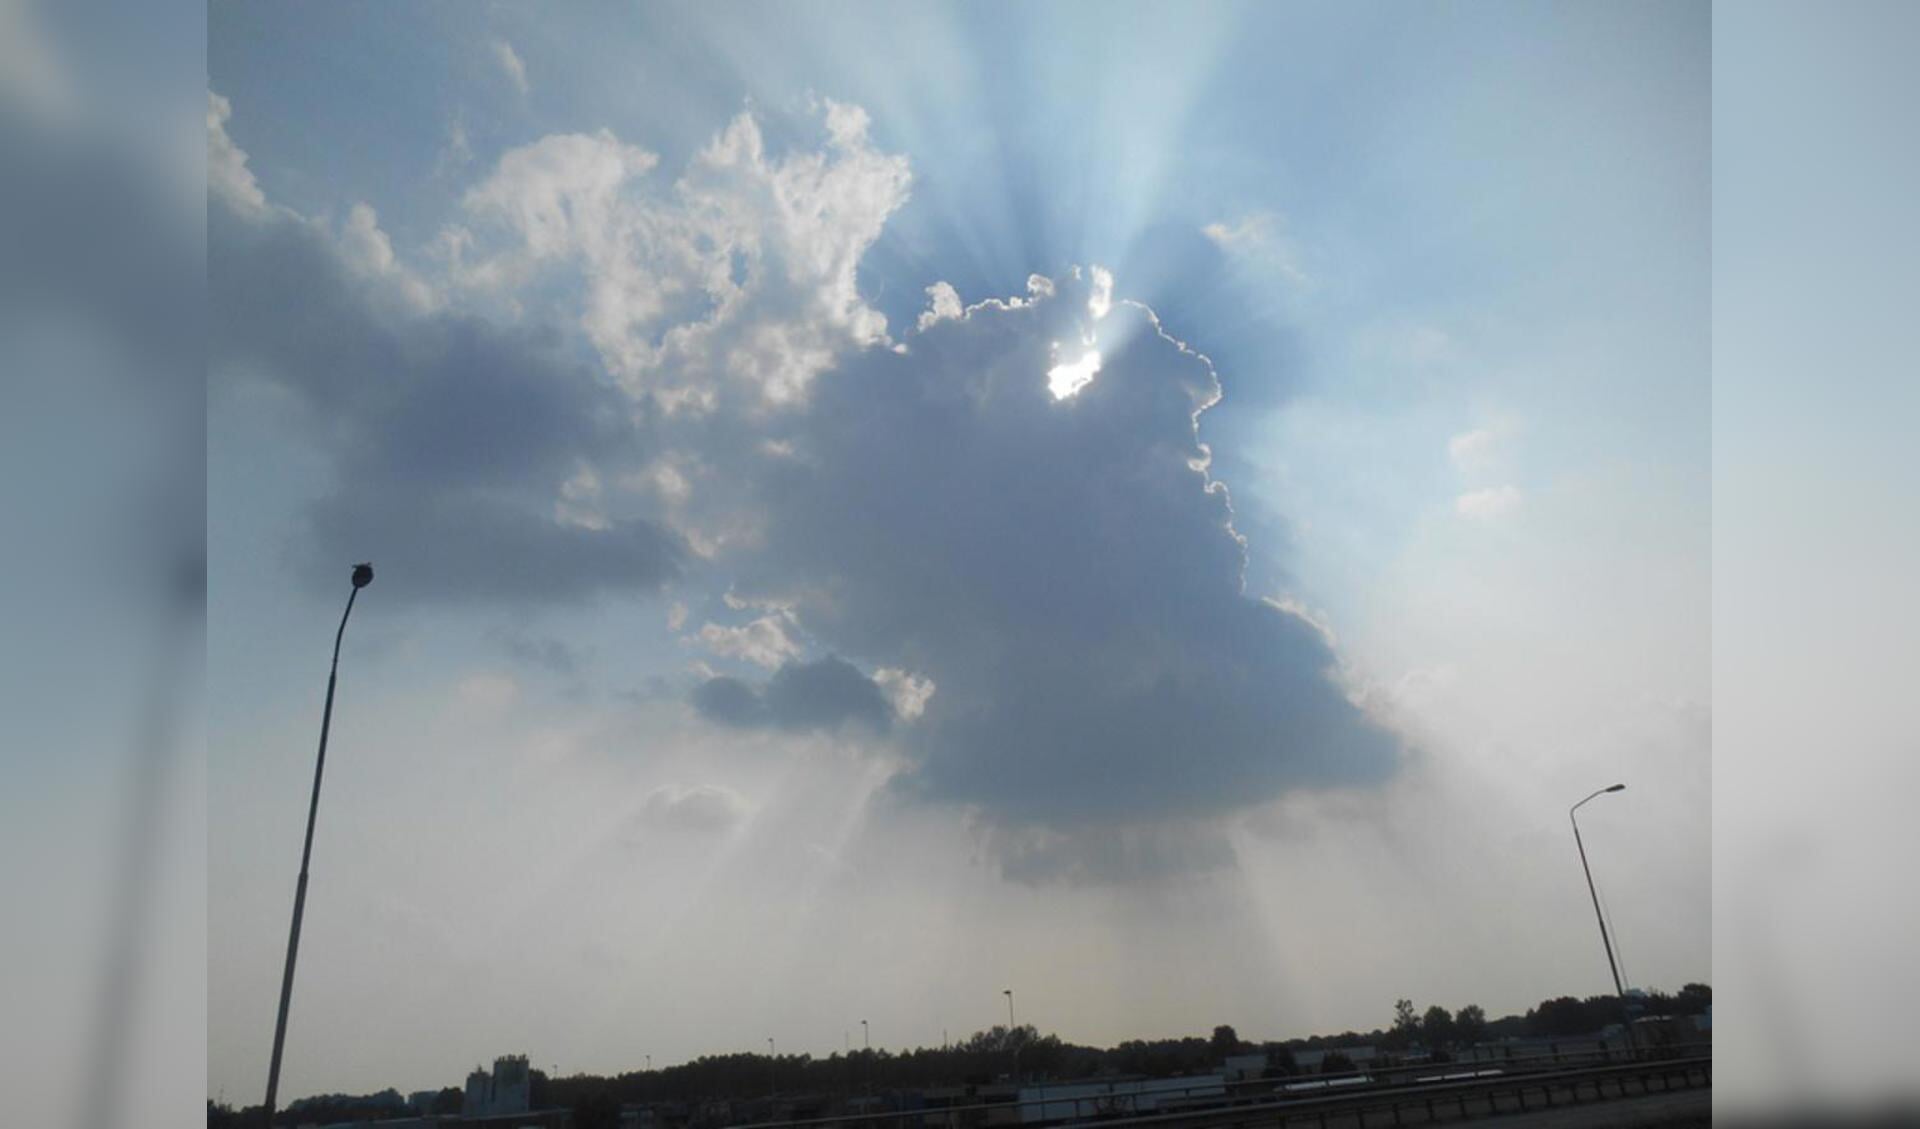 Meteo stuivertje wisselen zon en wolk